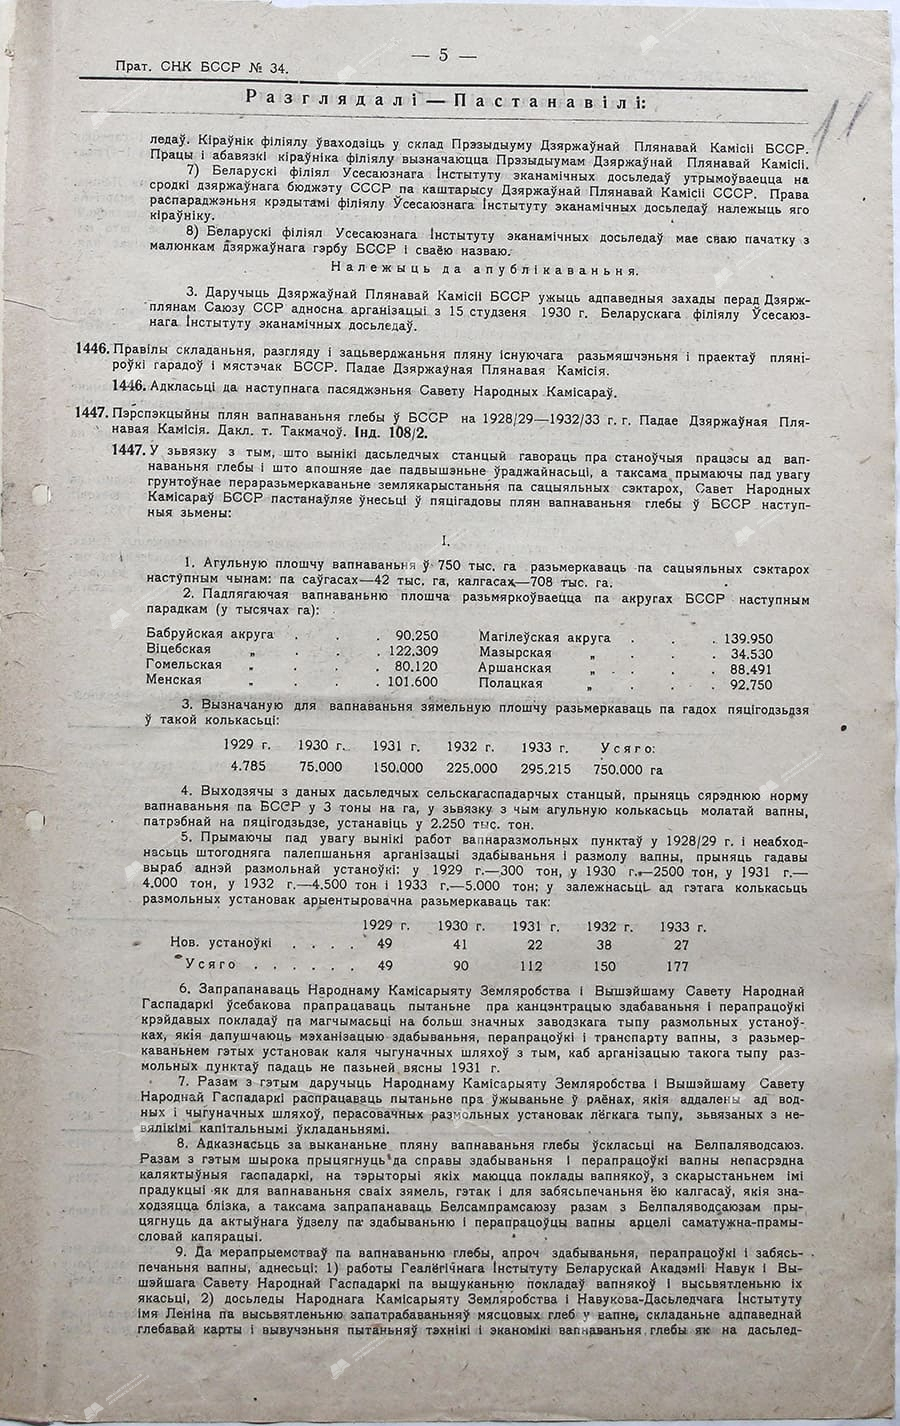 Протокол №34 заседания Совета Народных Комиссаров Белорусской ССР от 12 января 1930 г.-стр. 2